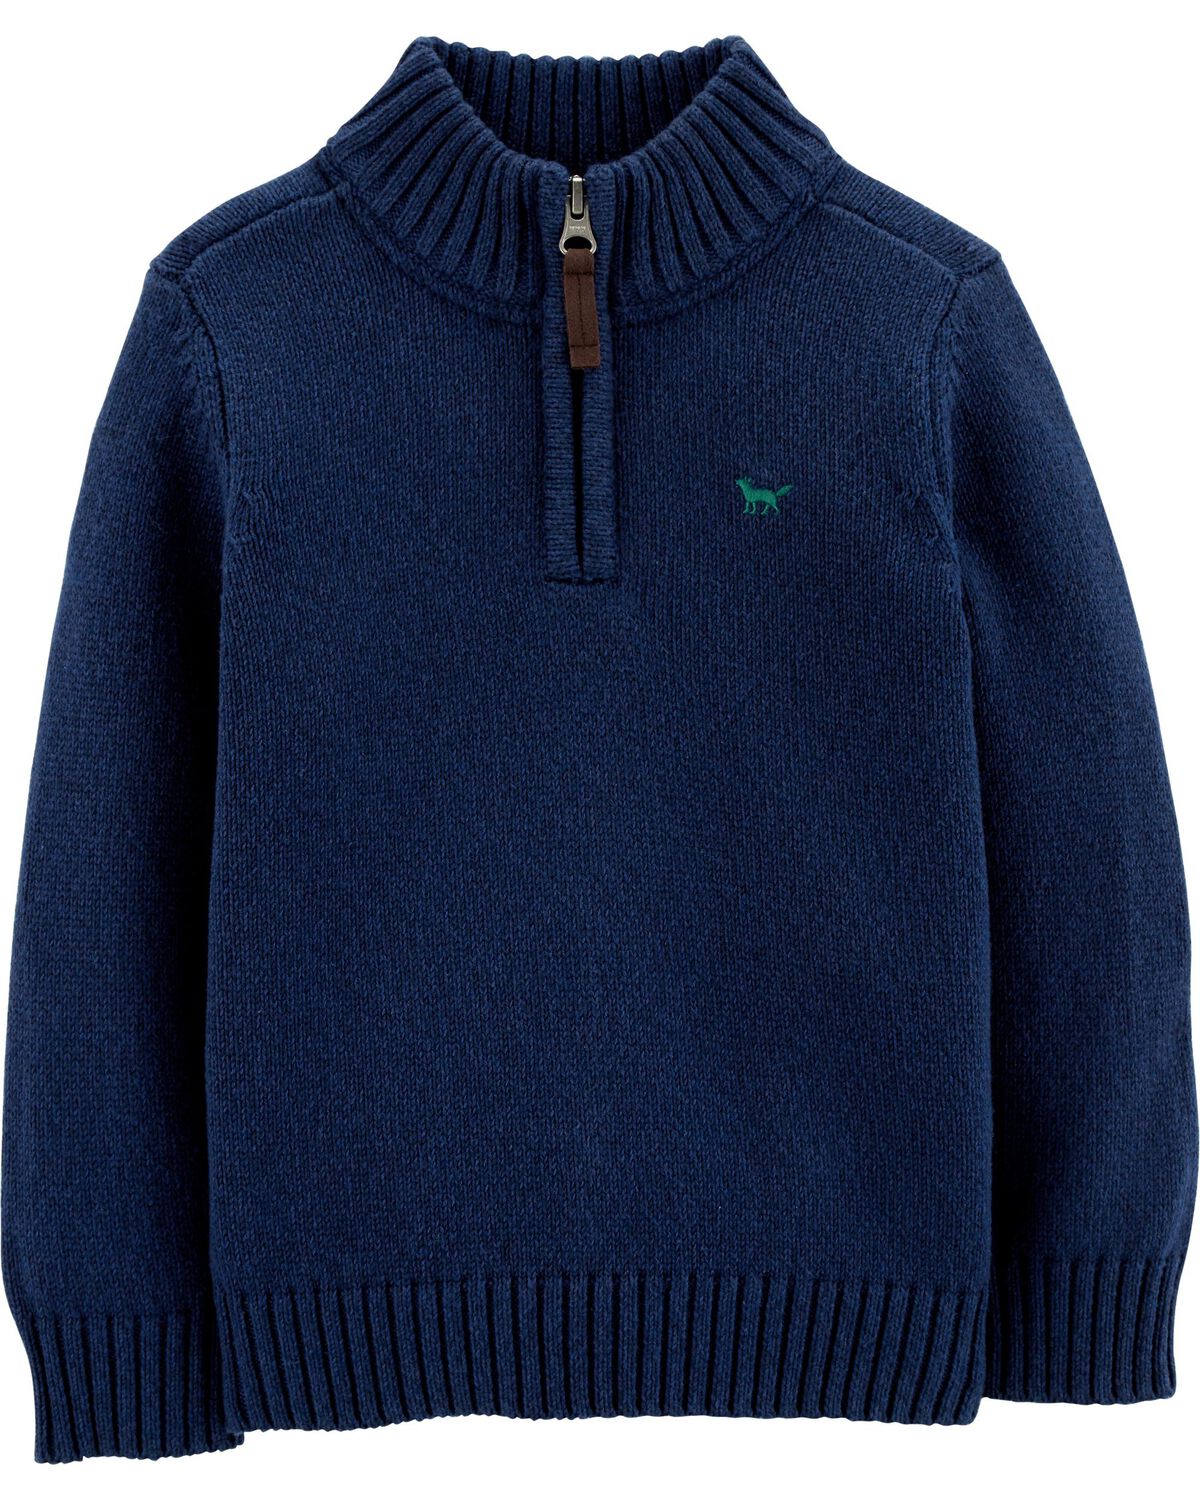 Navy Half-Zip Pullover Sweater | carters.com